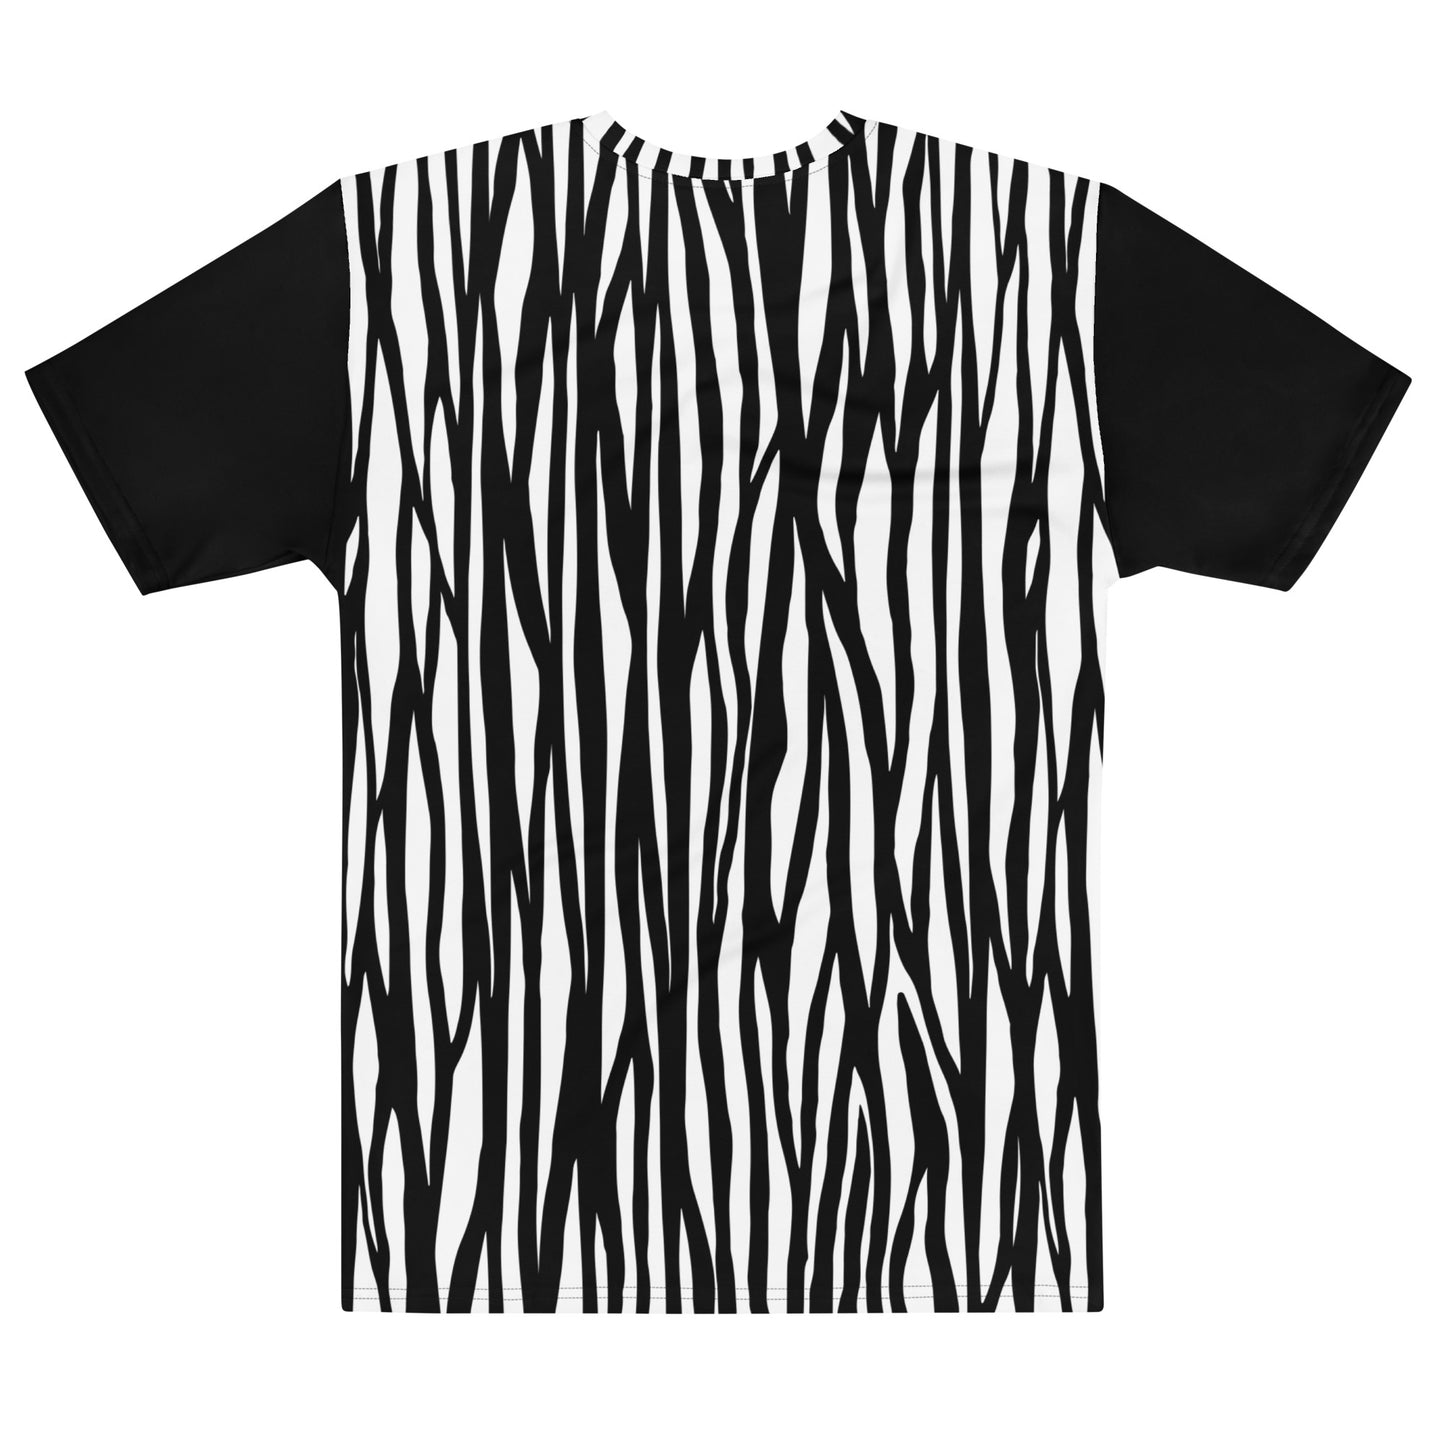 Panda Print Men's t-shirt